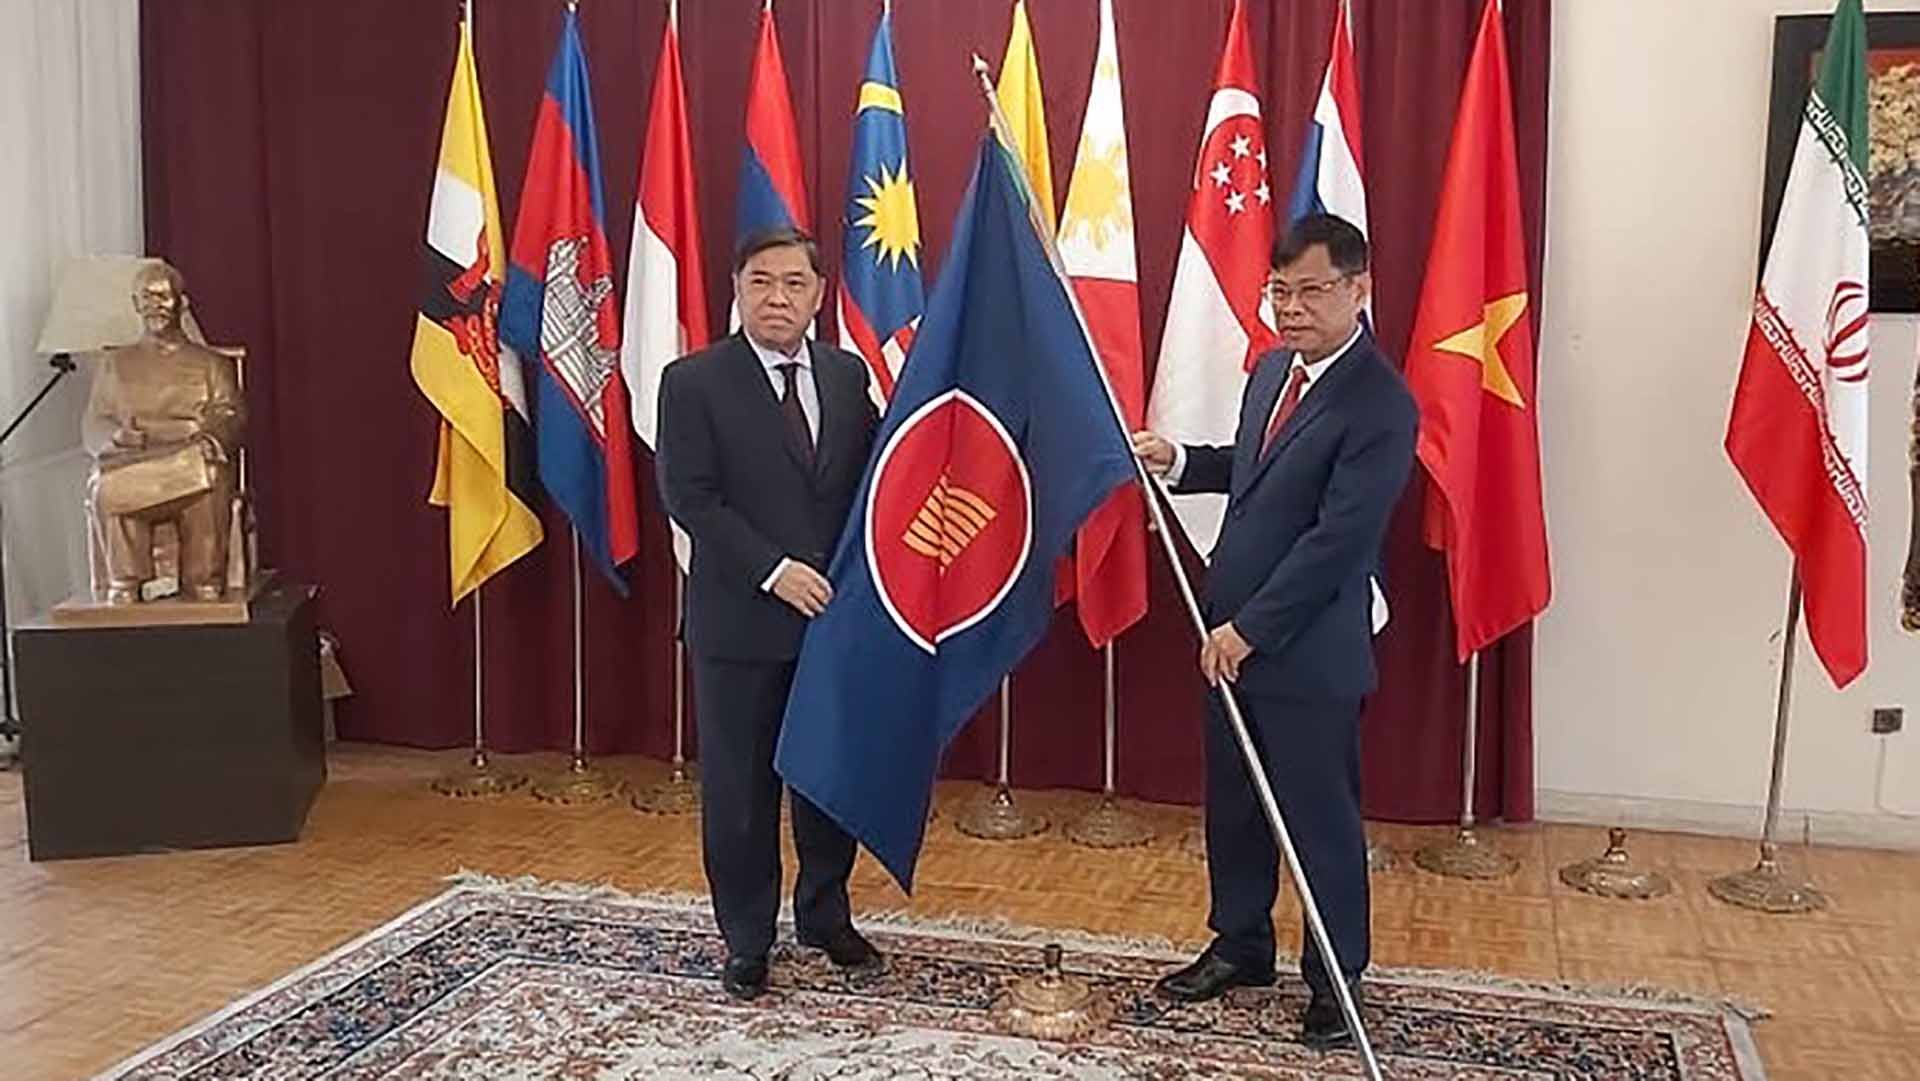 Đại sứ Lương Quốc Huy bàn giao chức Chủ tịch Ủy ban ASEAN-Tehran cho Đại sứ Brunei Awang Haji Esmaeil.